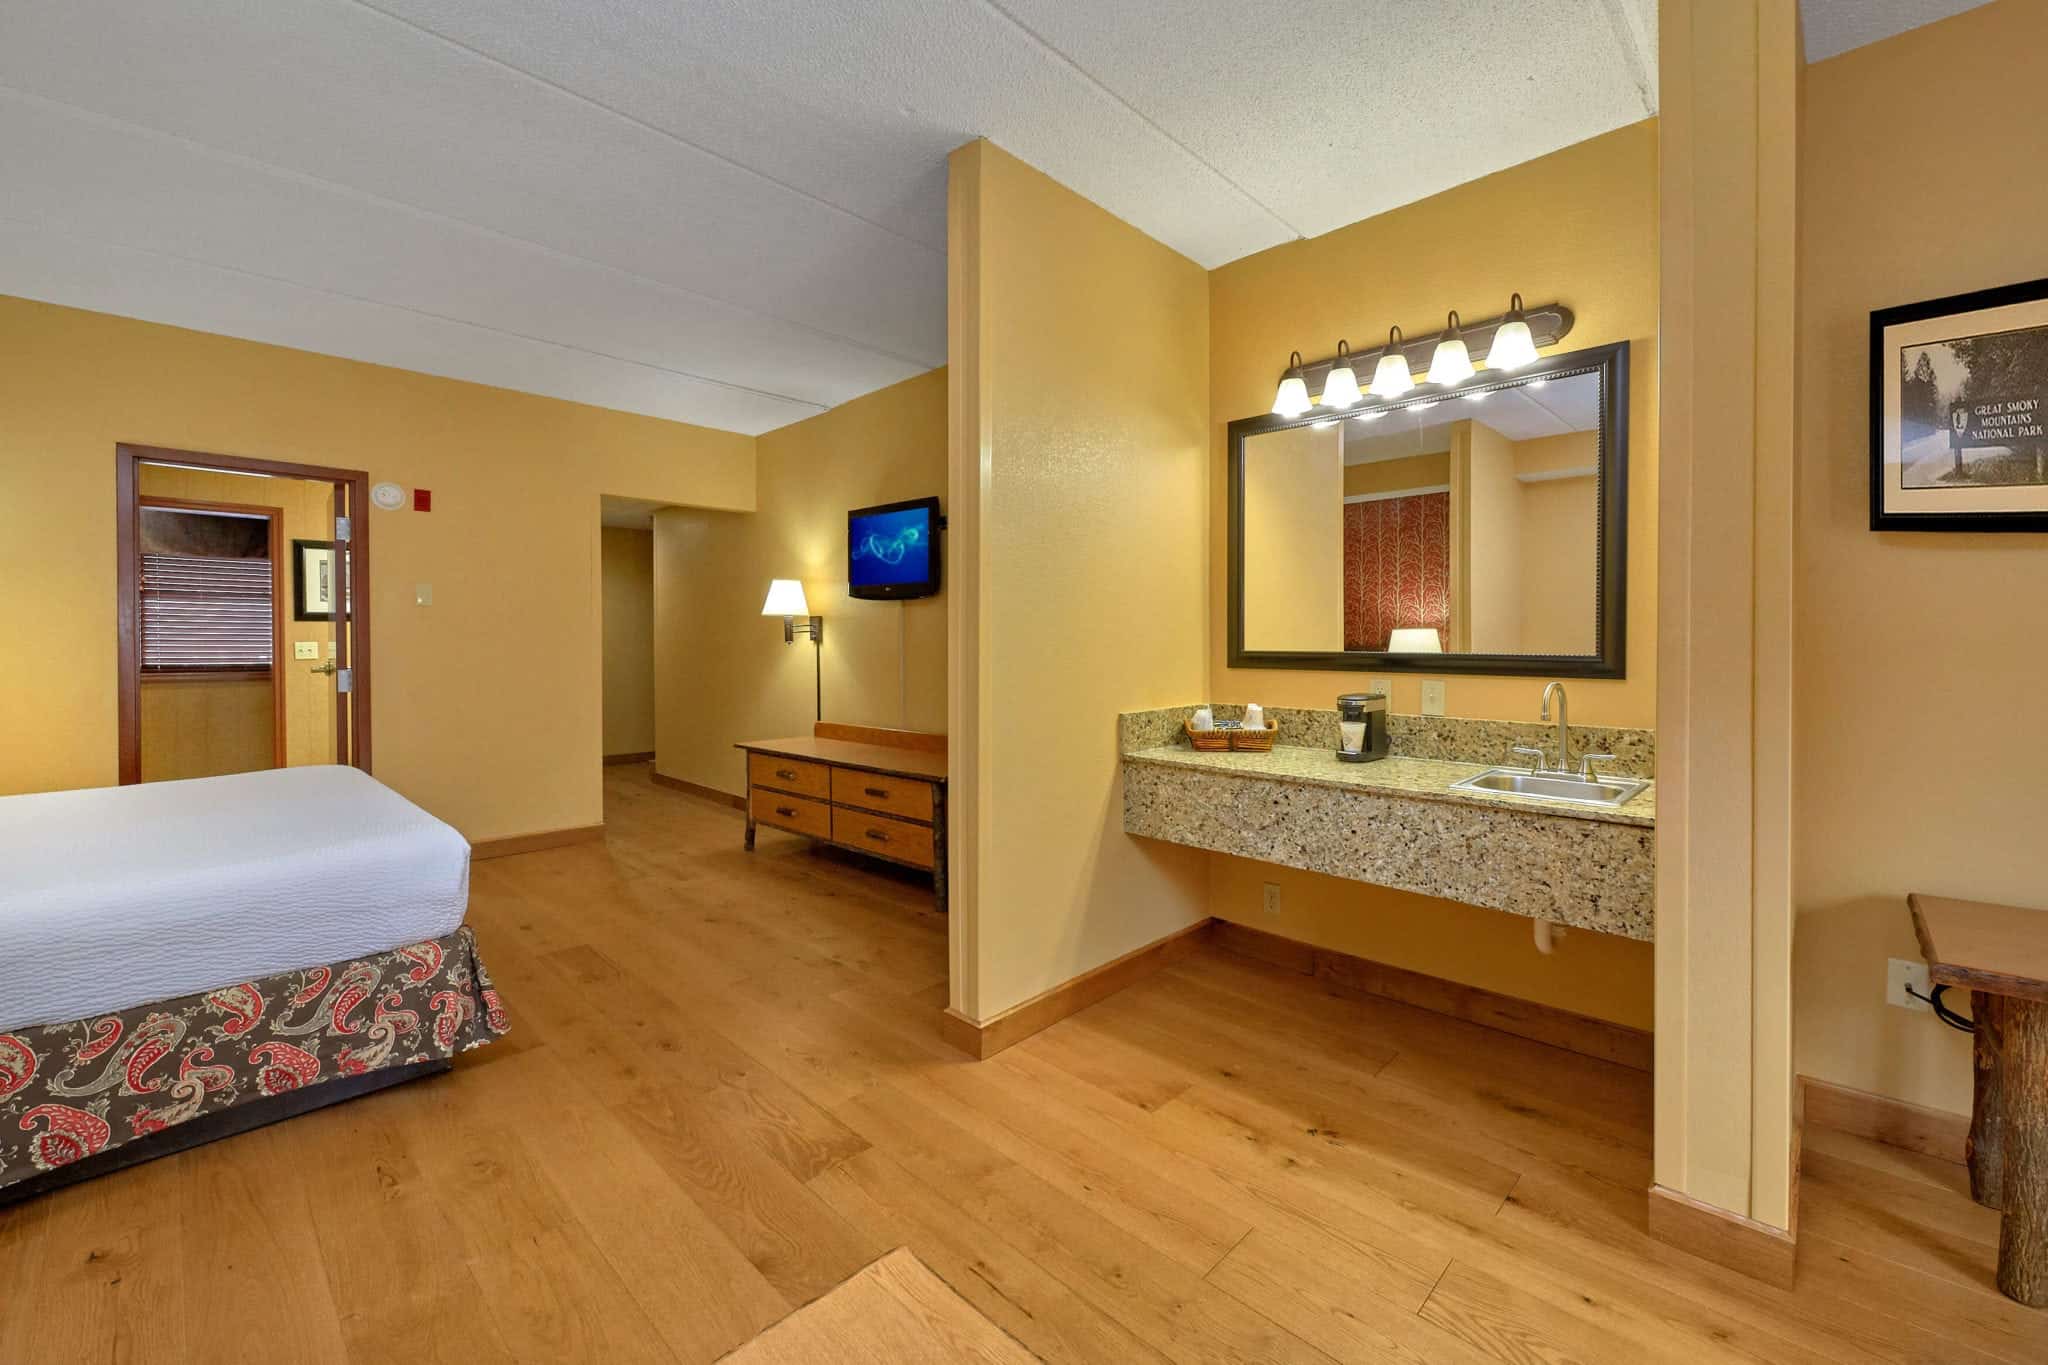 King suite in Bearskin Lodge hotel in Gatlinburg TN